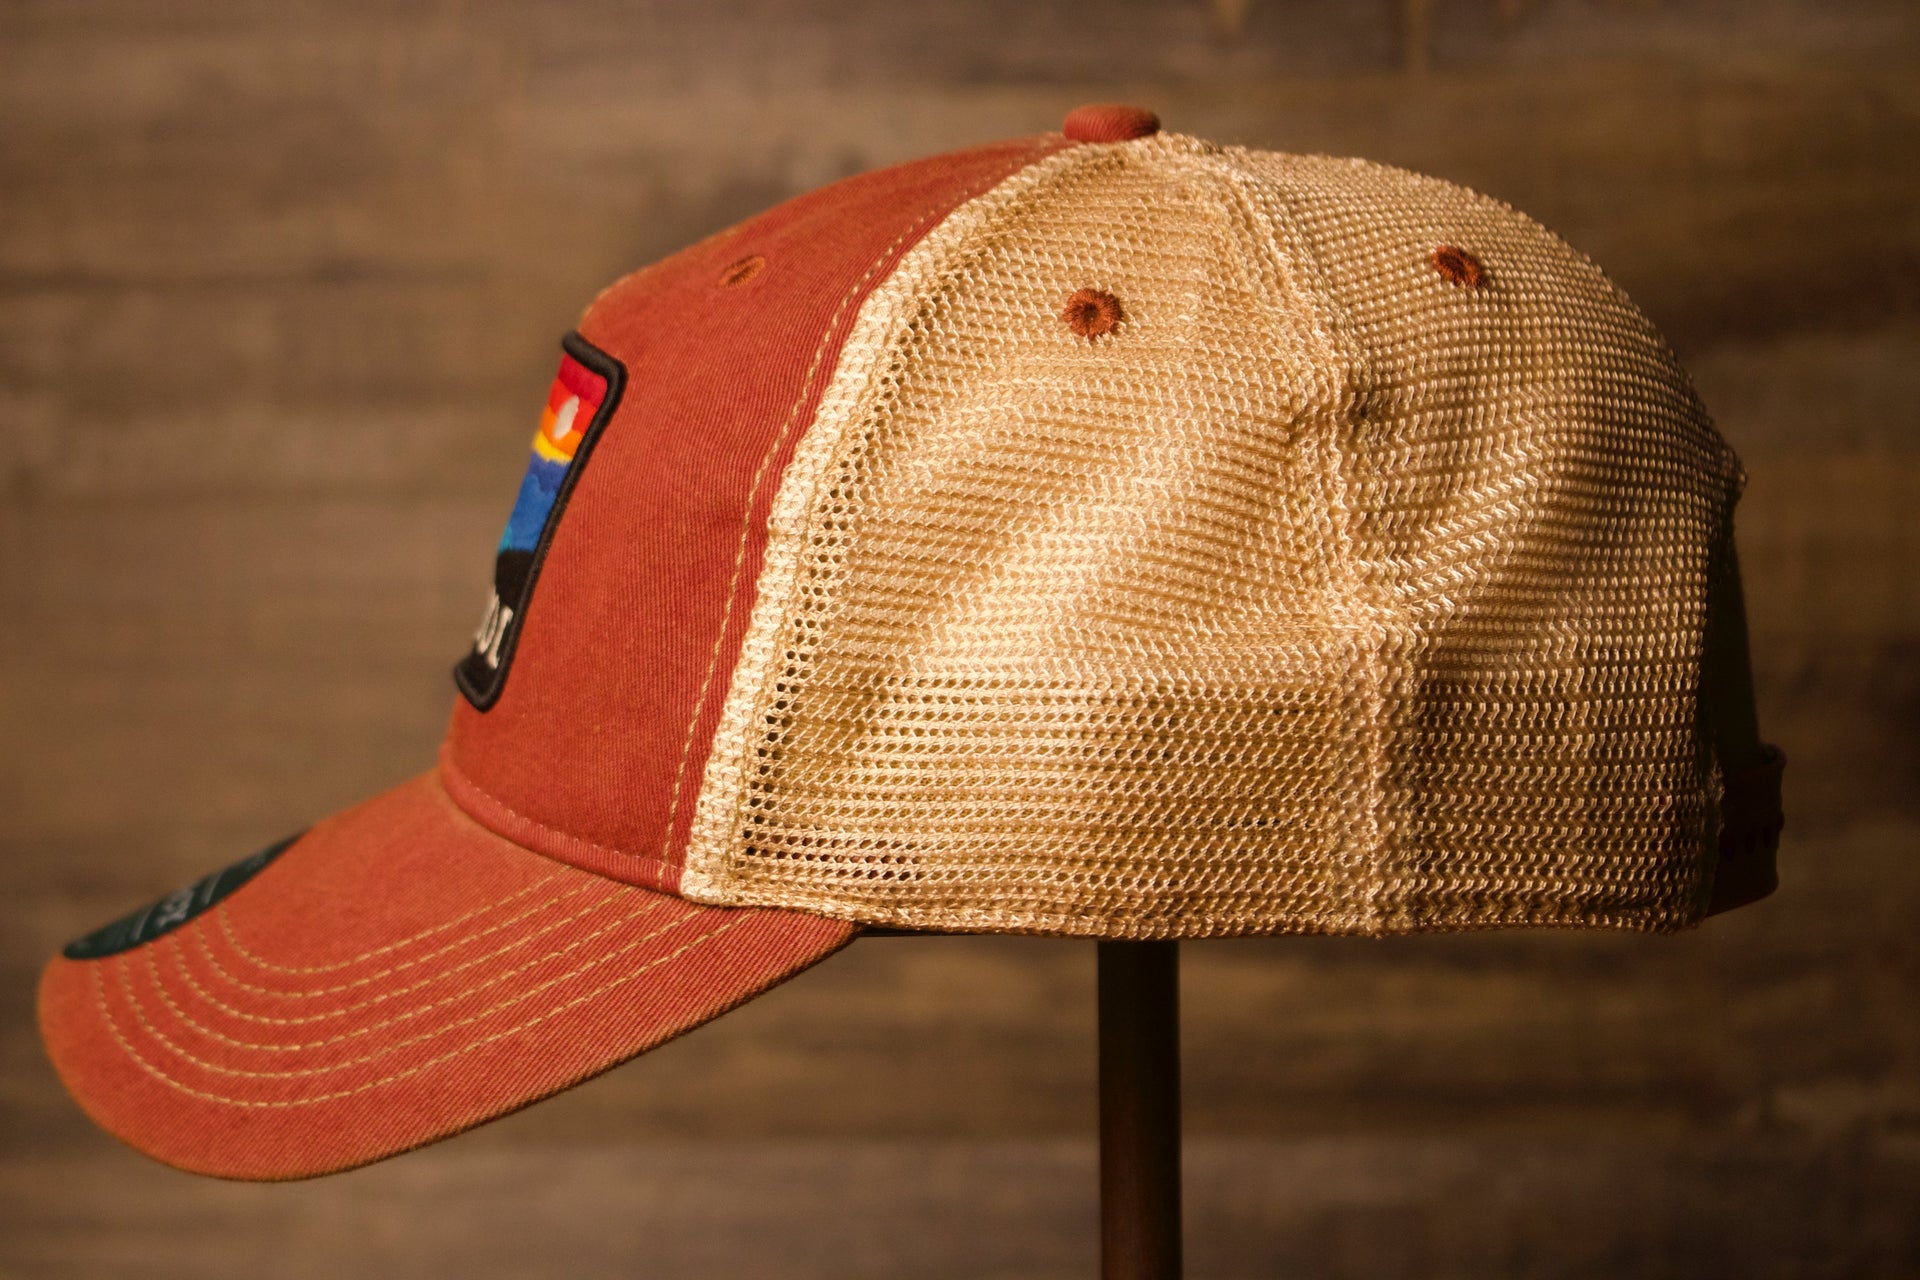 Wildwood kid's hat | Youth Wildwood NJ Cardinal Mesh-back Trucker Hat the wearers left side is a trucker style